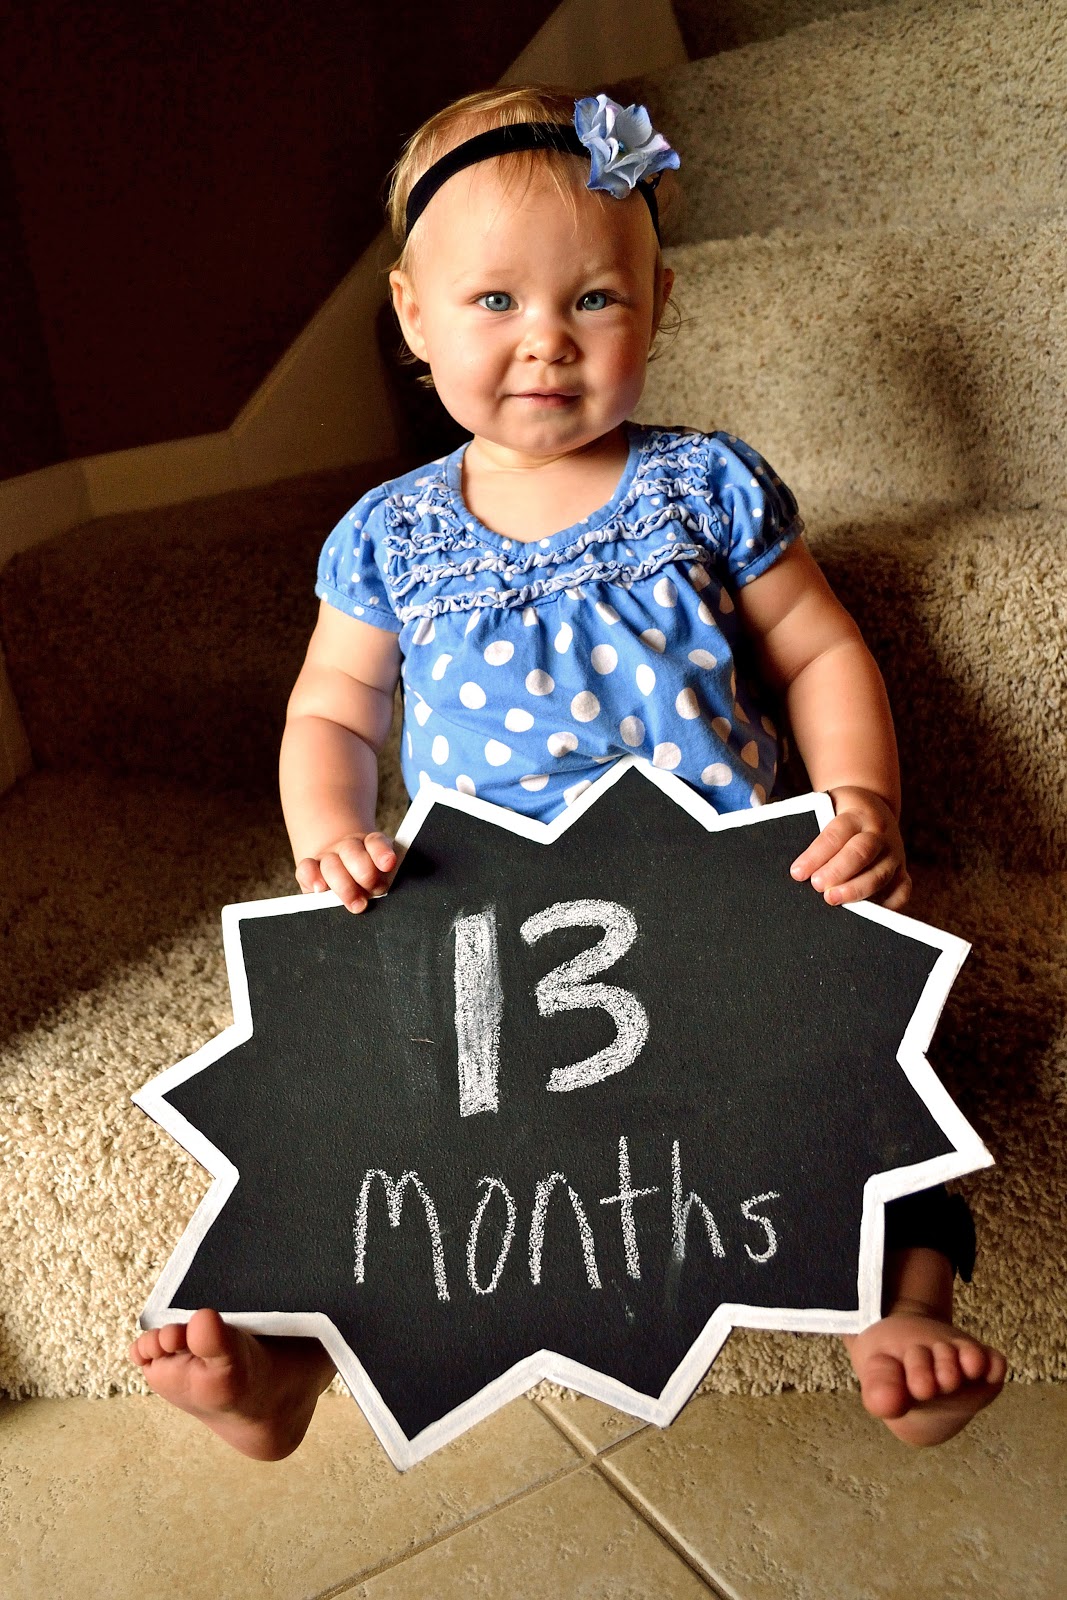 13 months